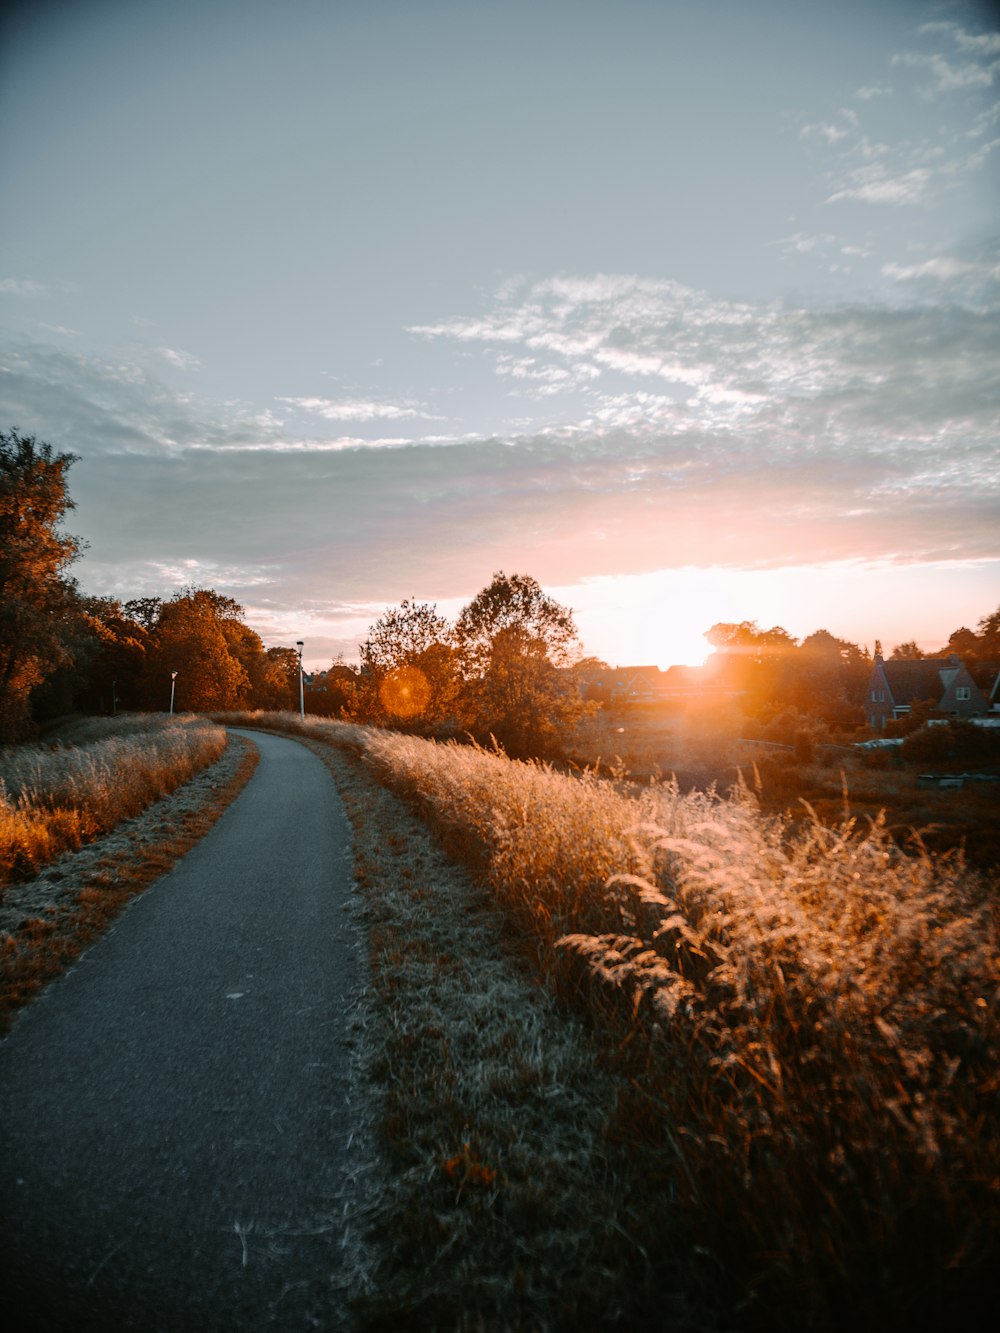 gray asphalt road between brown grass field during sunset